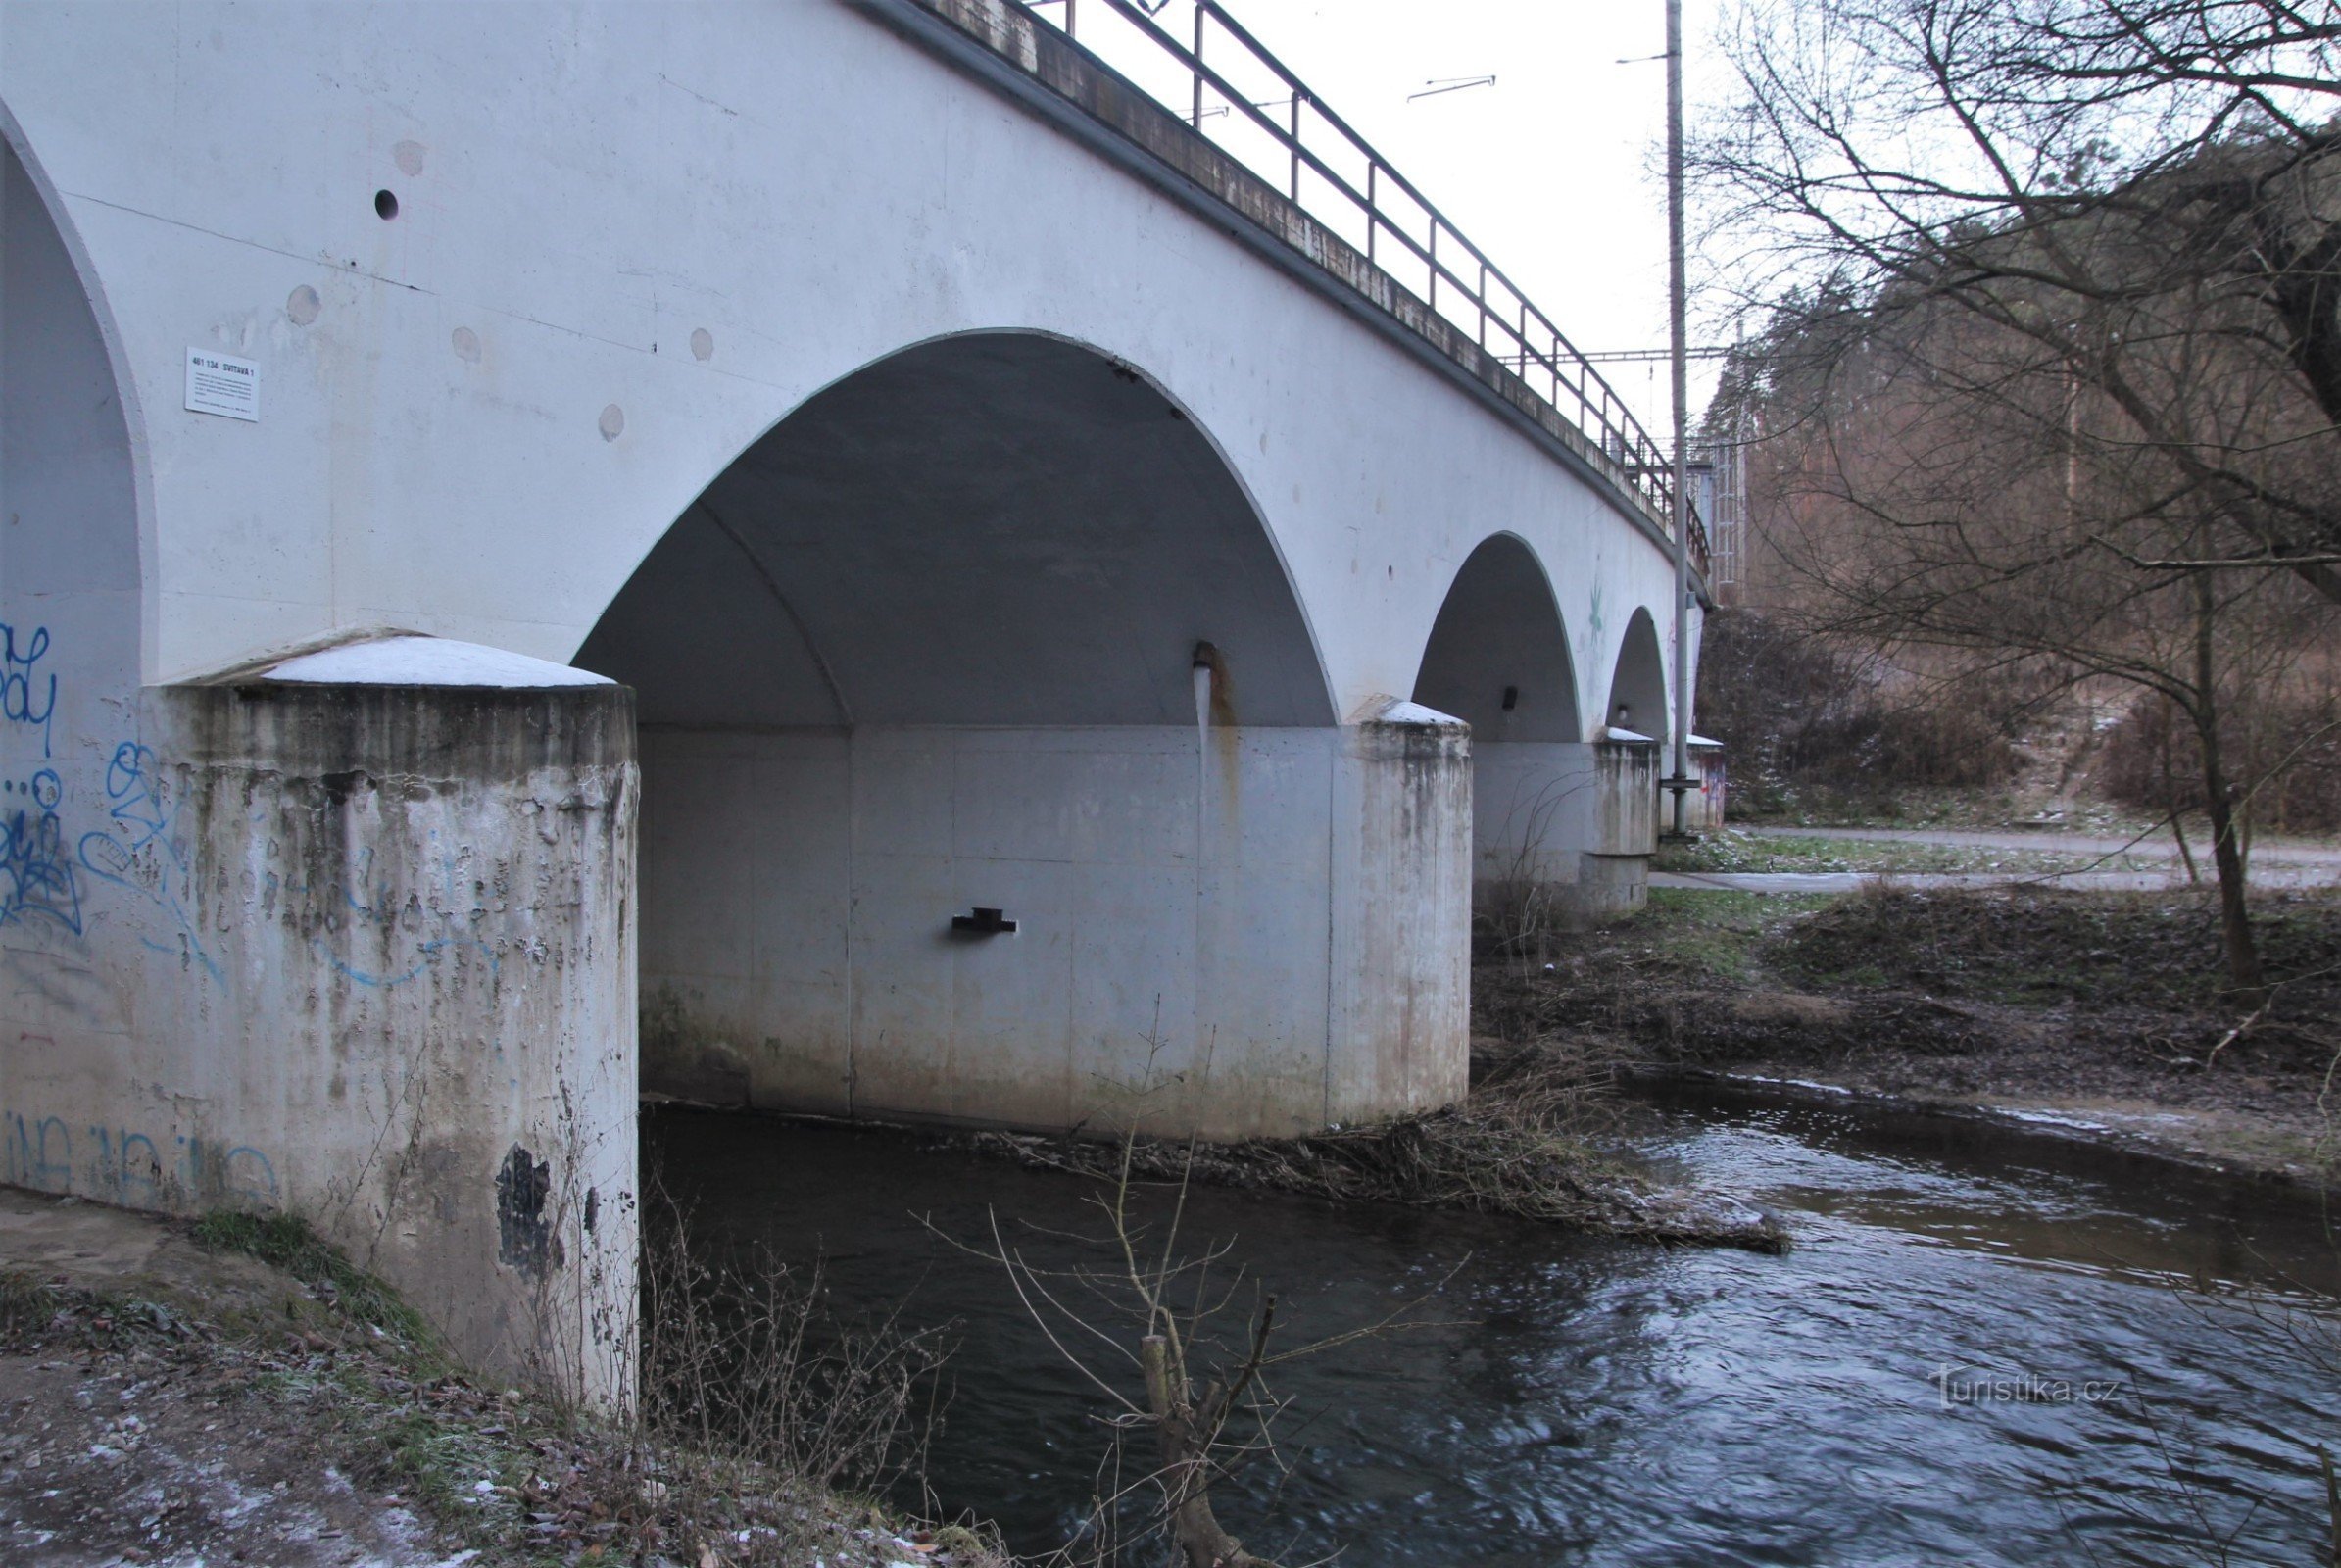 Vasúti híd a felújítás előtt (2015. január)